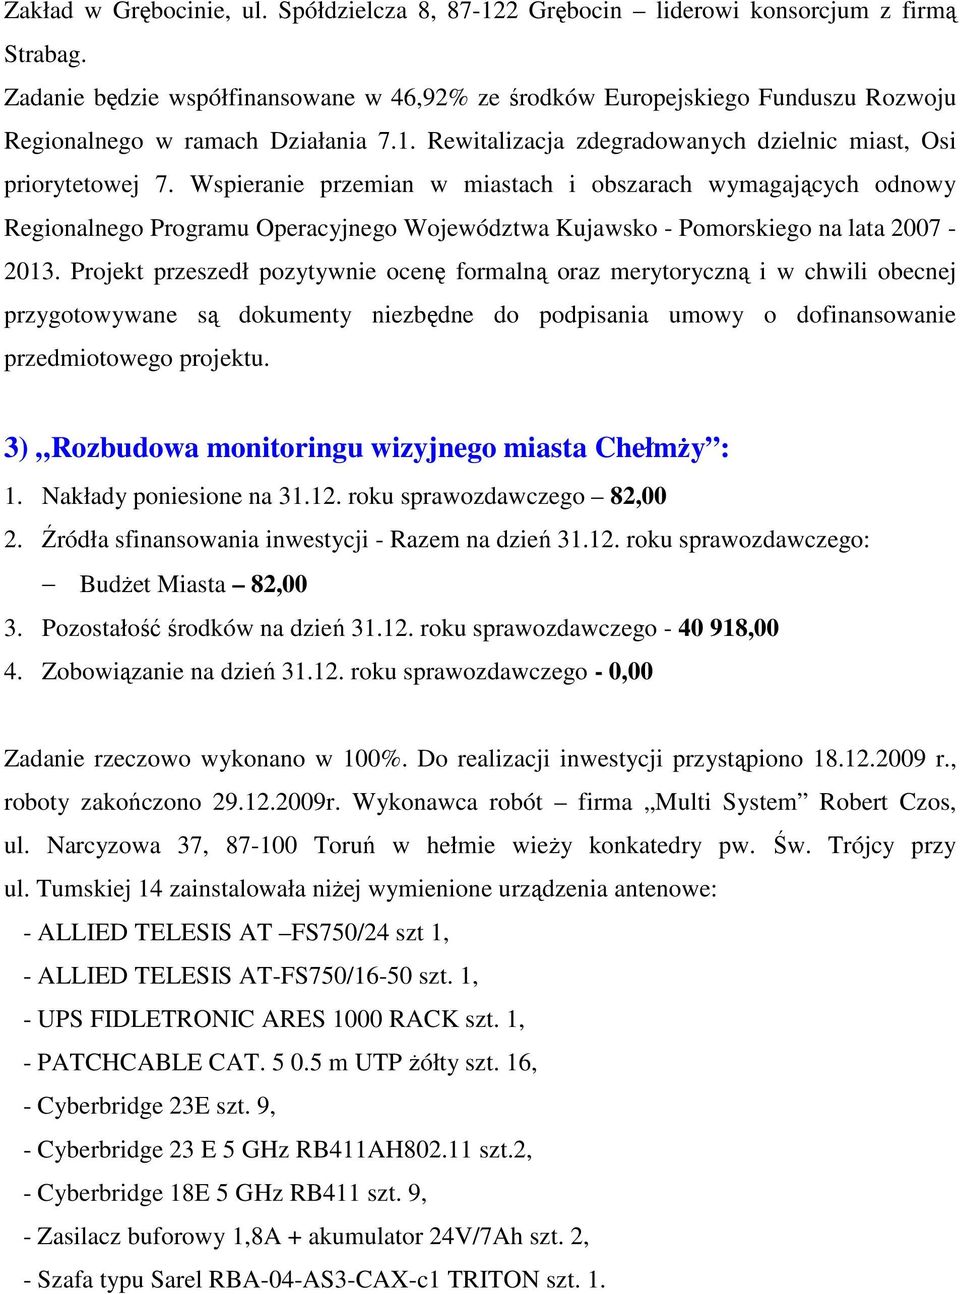 Wspieranie przemian w miastach i obszarach wymagających odnowy Regionalnego Programu Operacyjnego Województwa Kujawsko - Pomorskiego na lata 2007-2013.